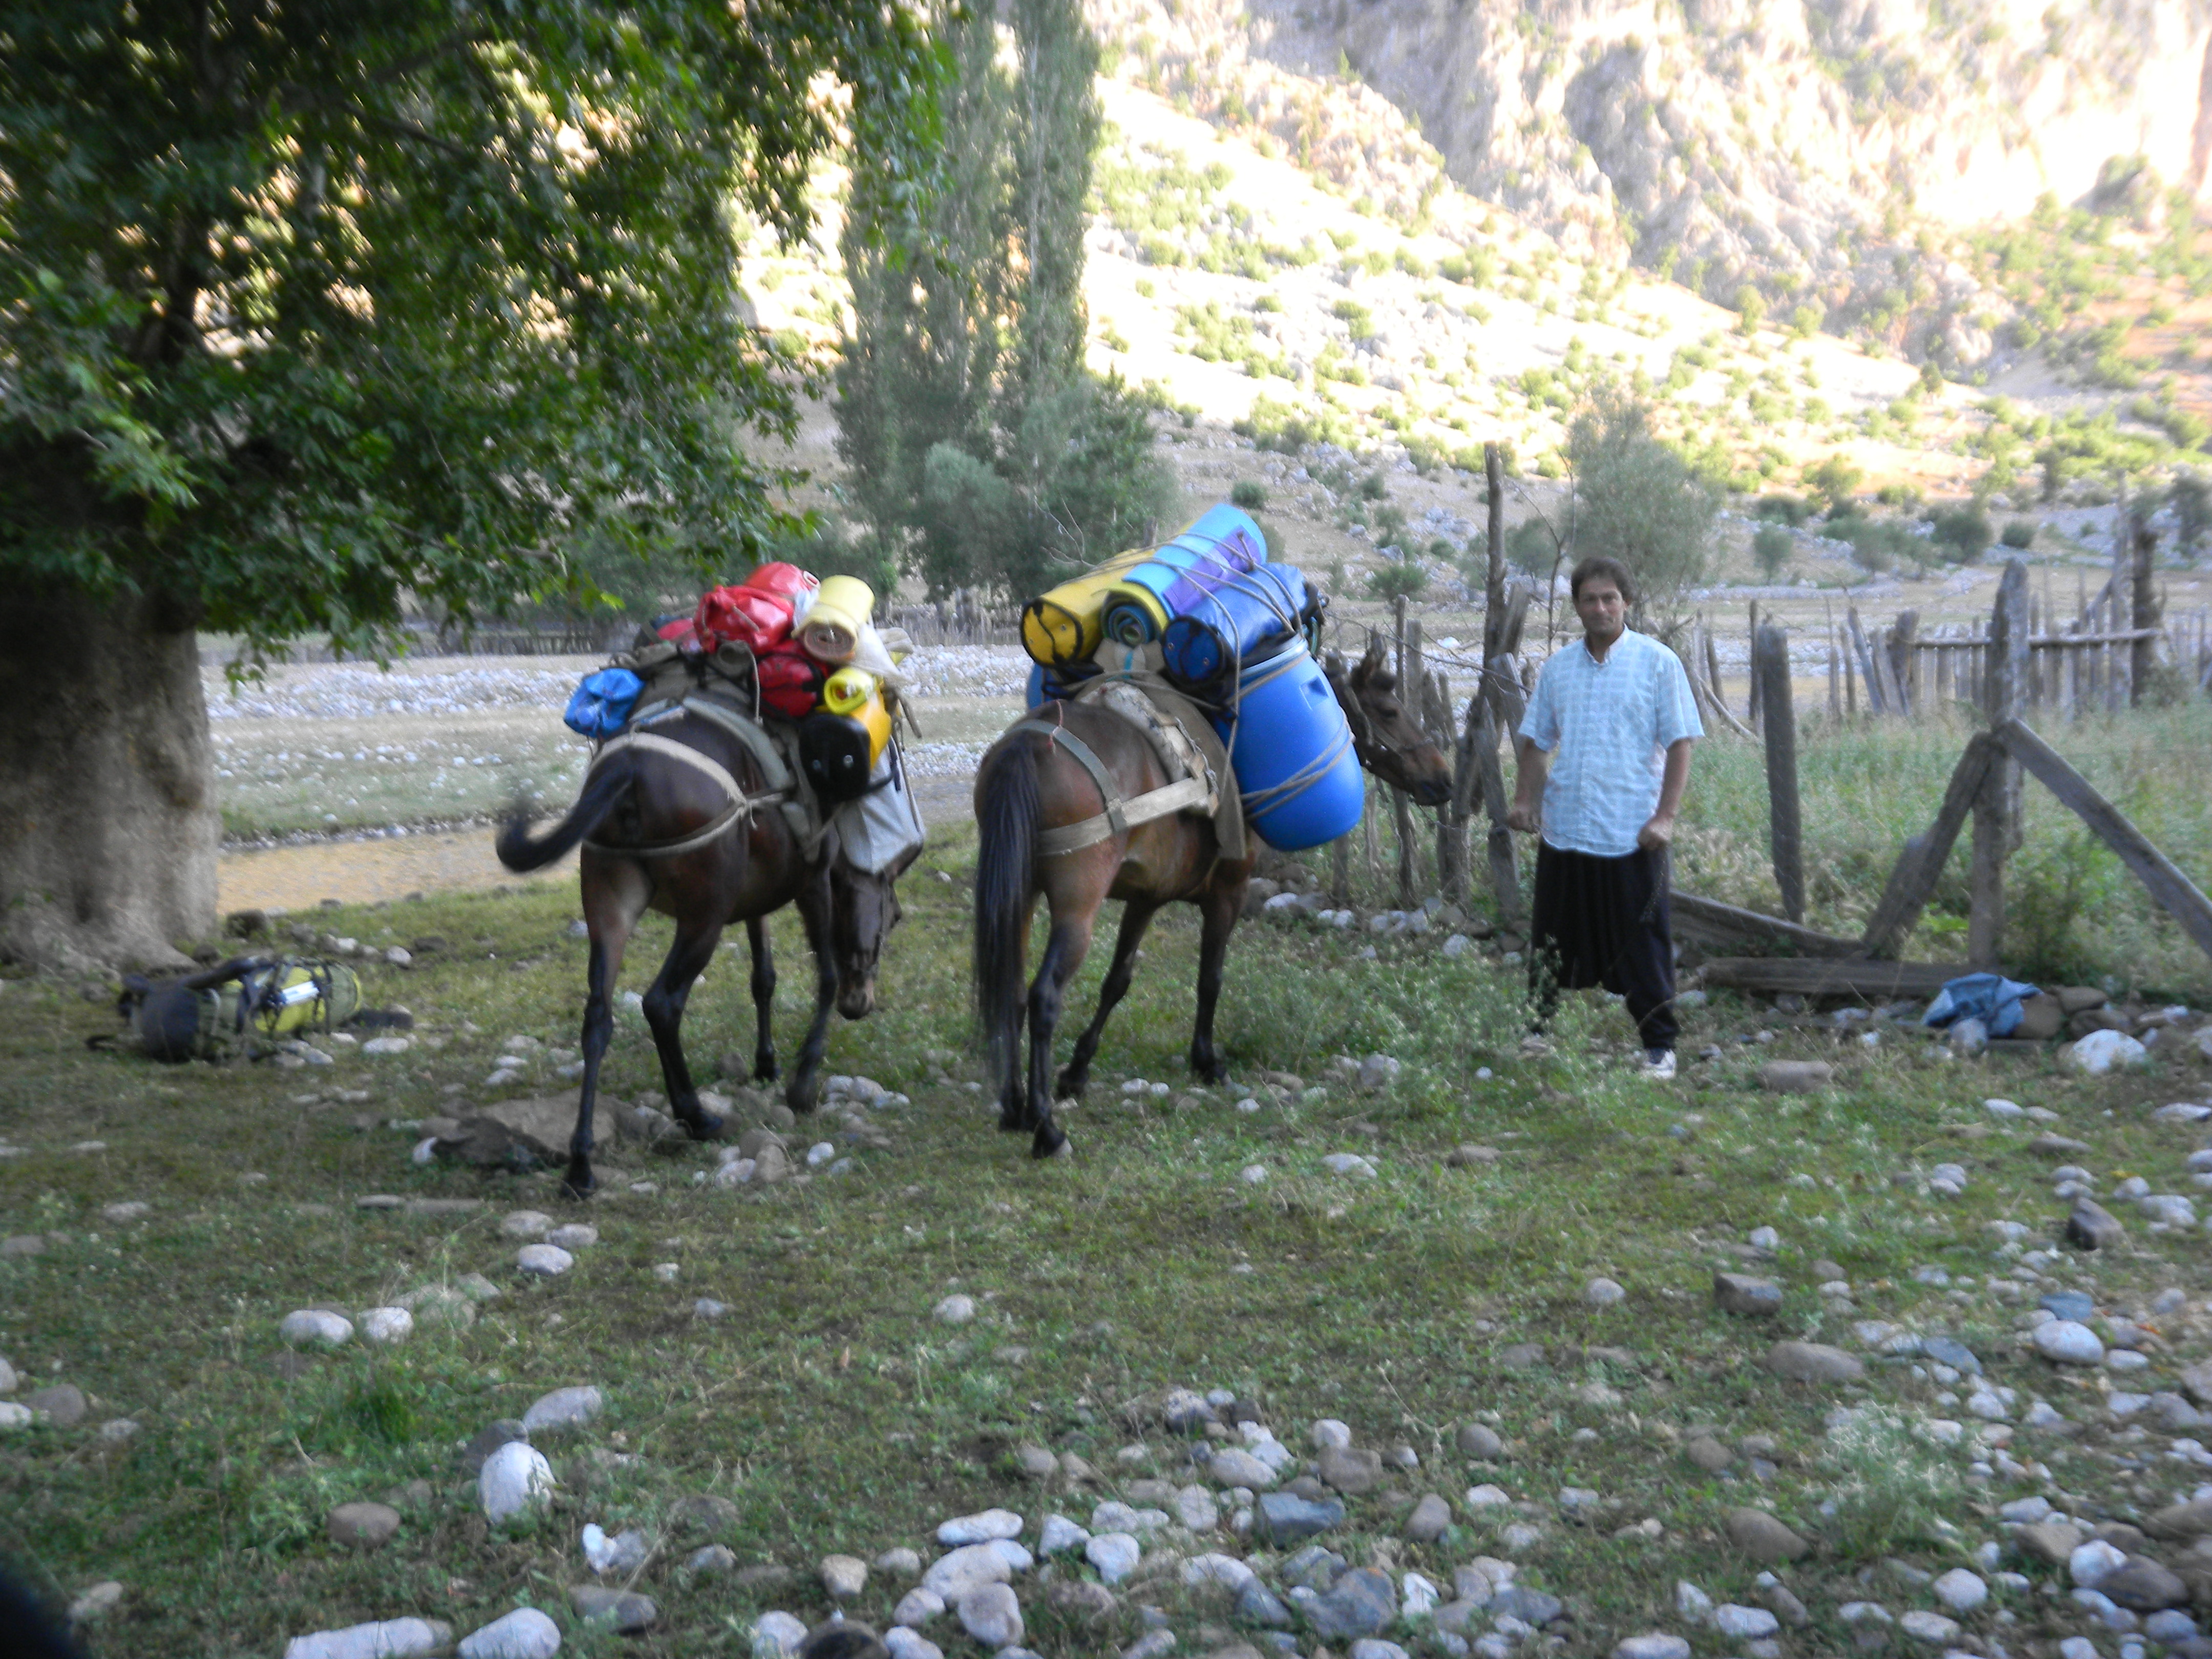 Сборы мулов в Уулупинаре для заброски снаряжения, продуктов, оборудования. Всего 7 мулов по 80 кг на каждого.